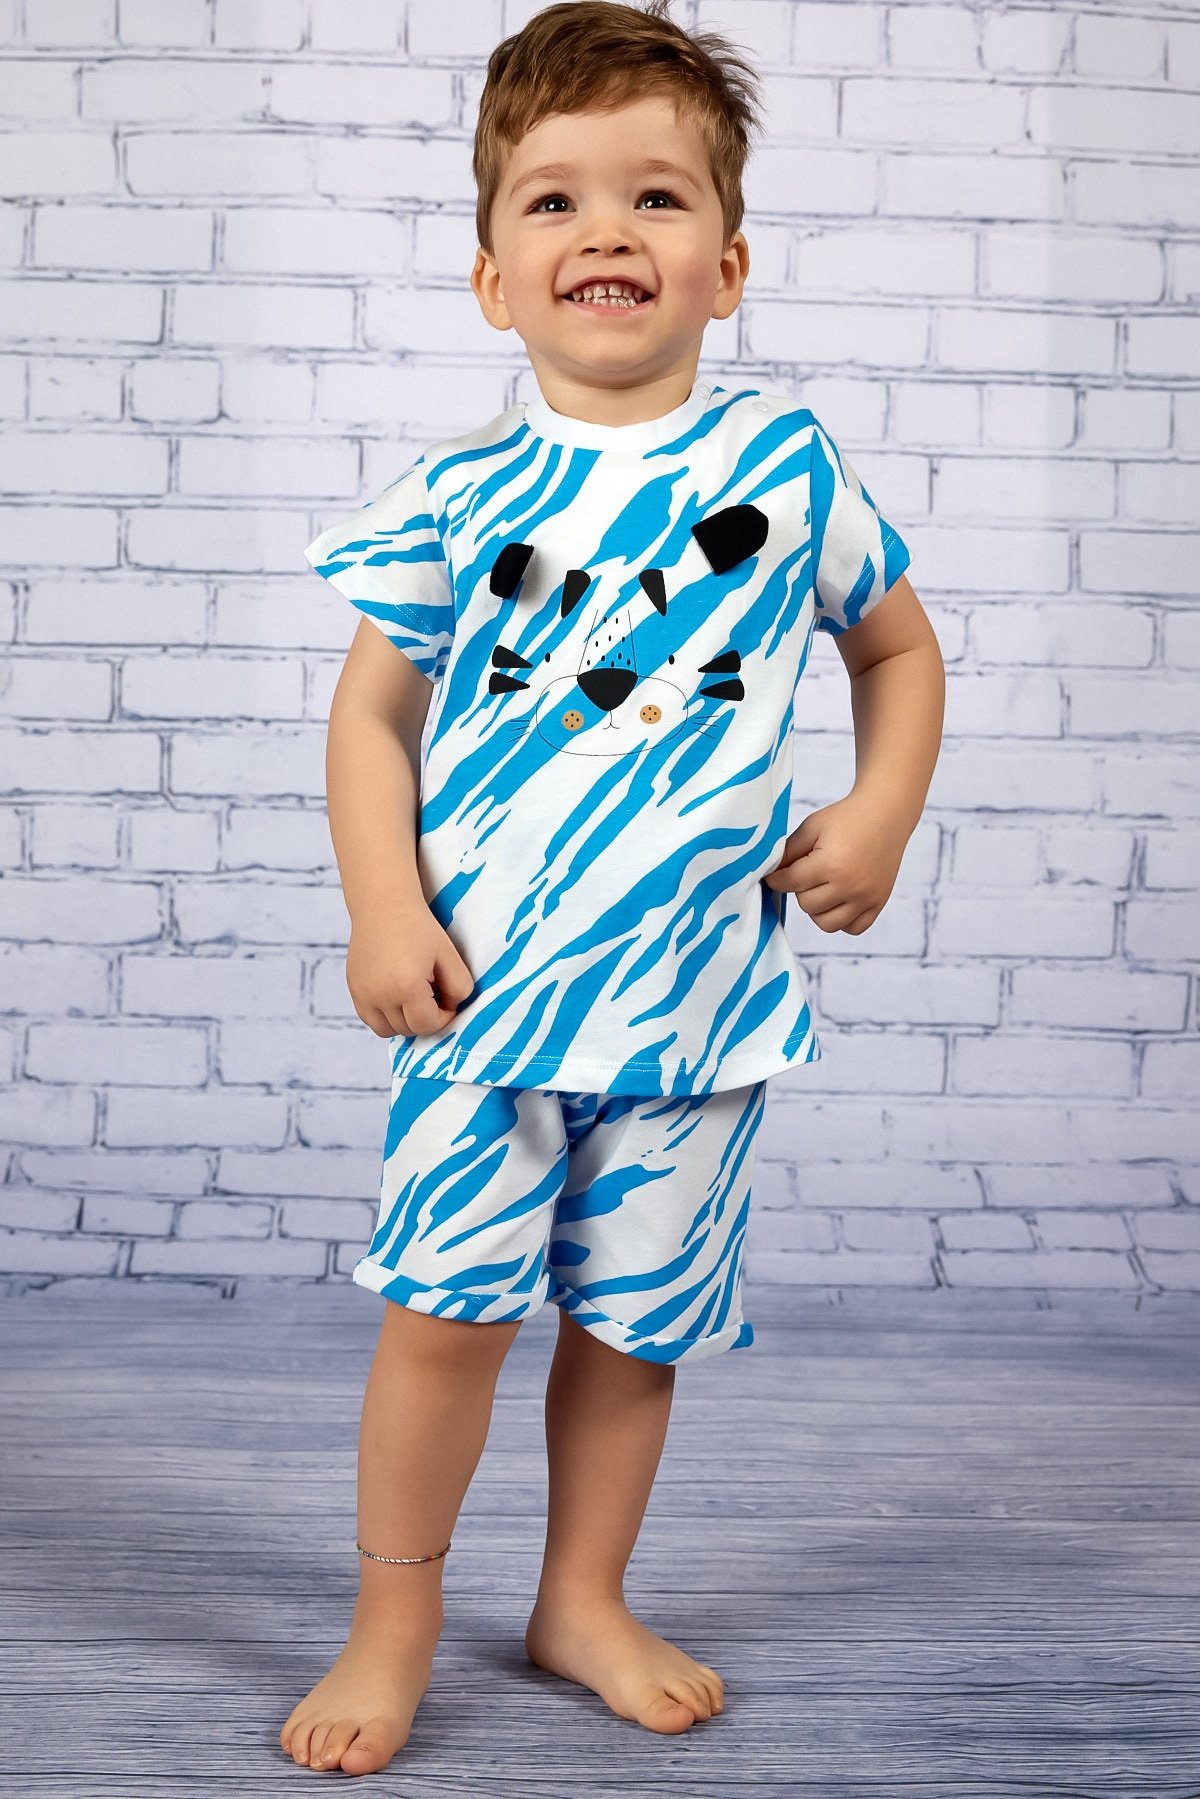 ZEYLAND Erkek Bebek Baskılı Mavi Desenli T-Shirt ve Şort Takım